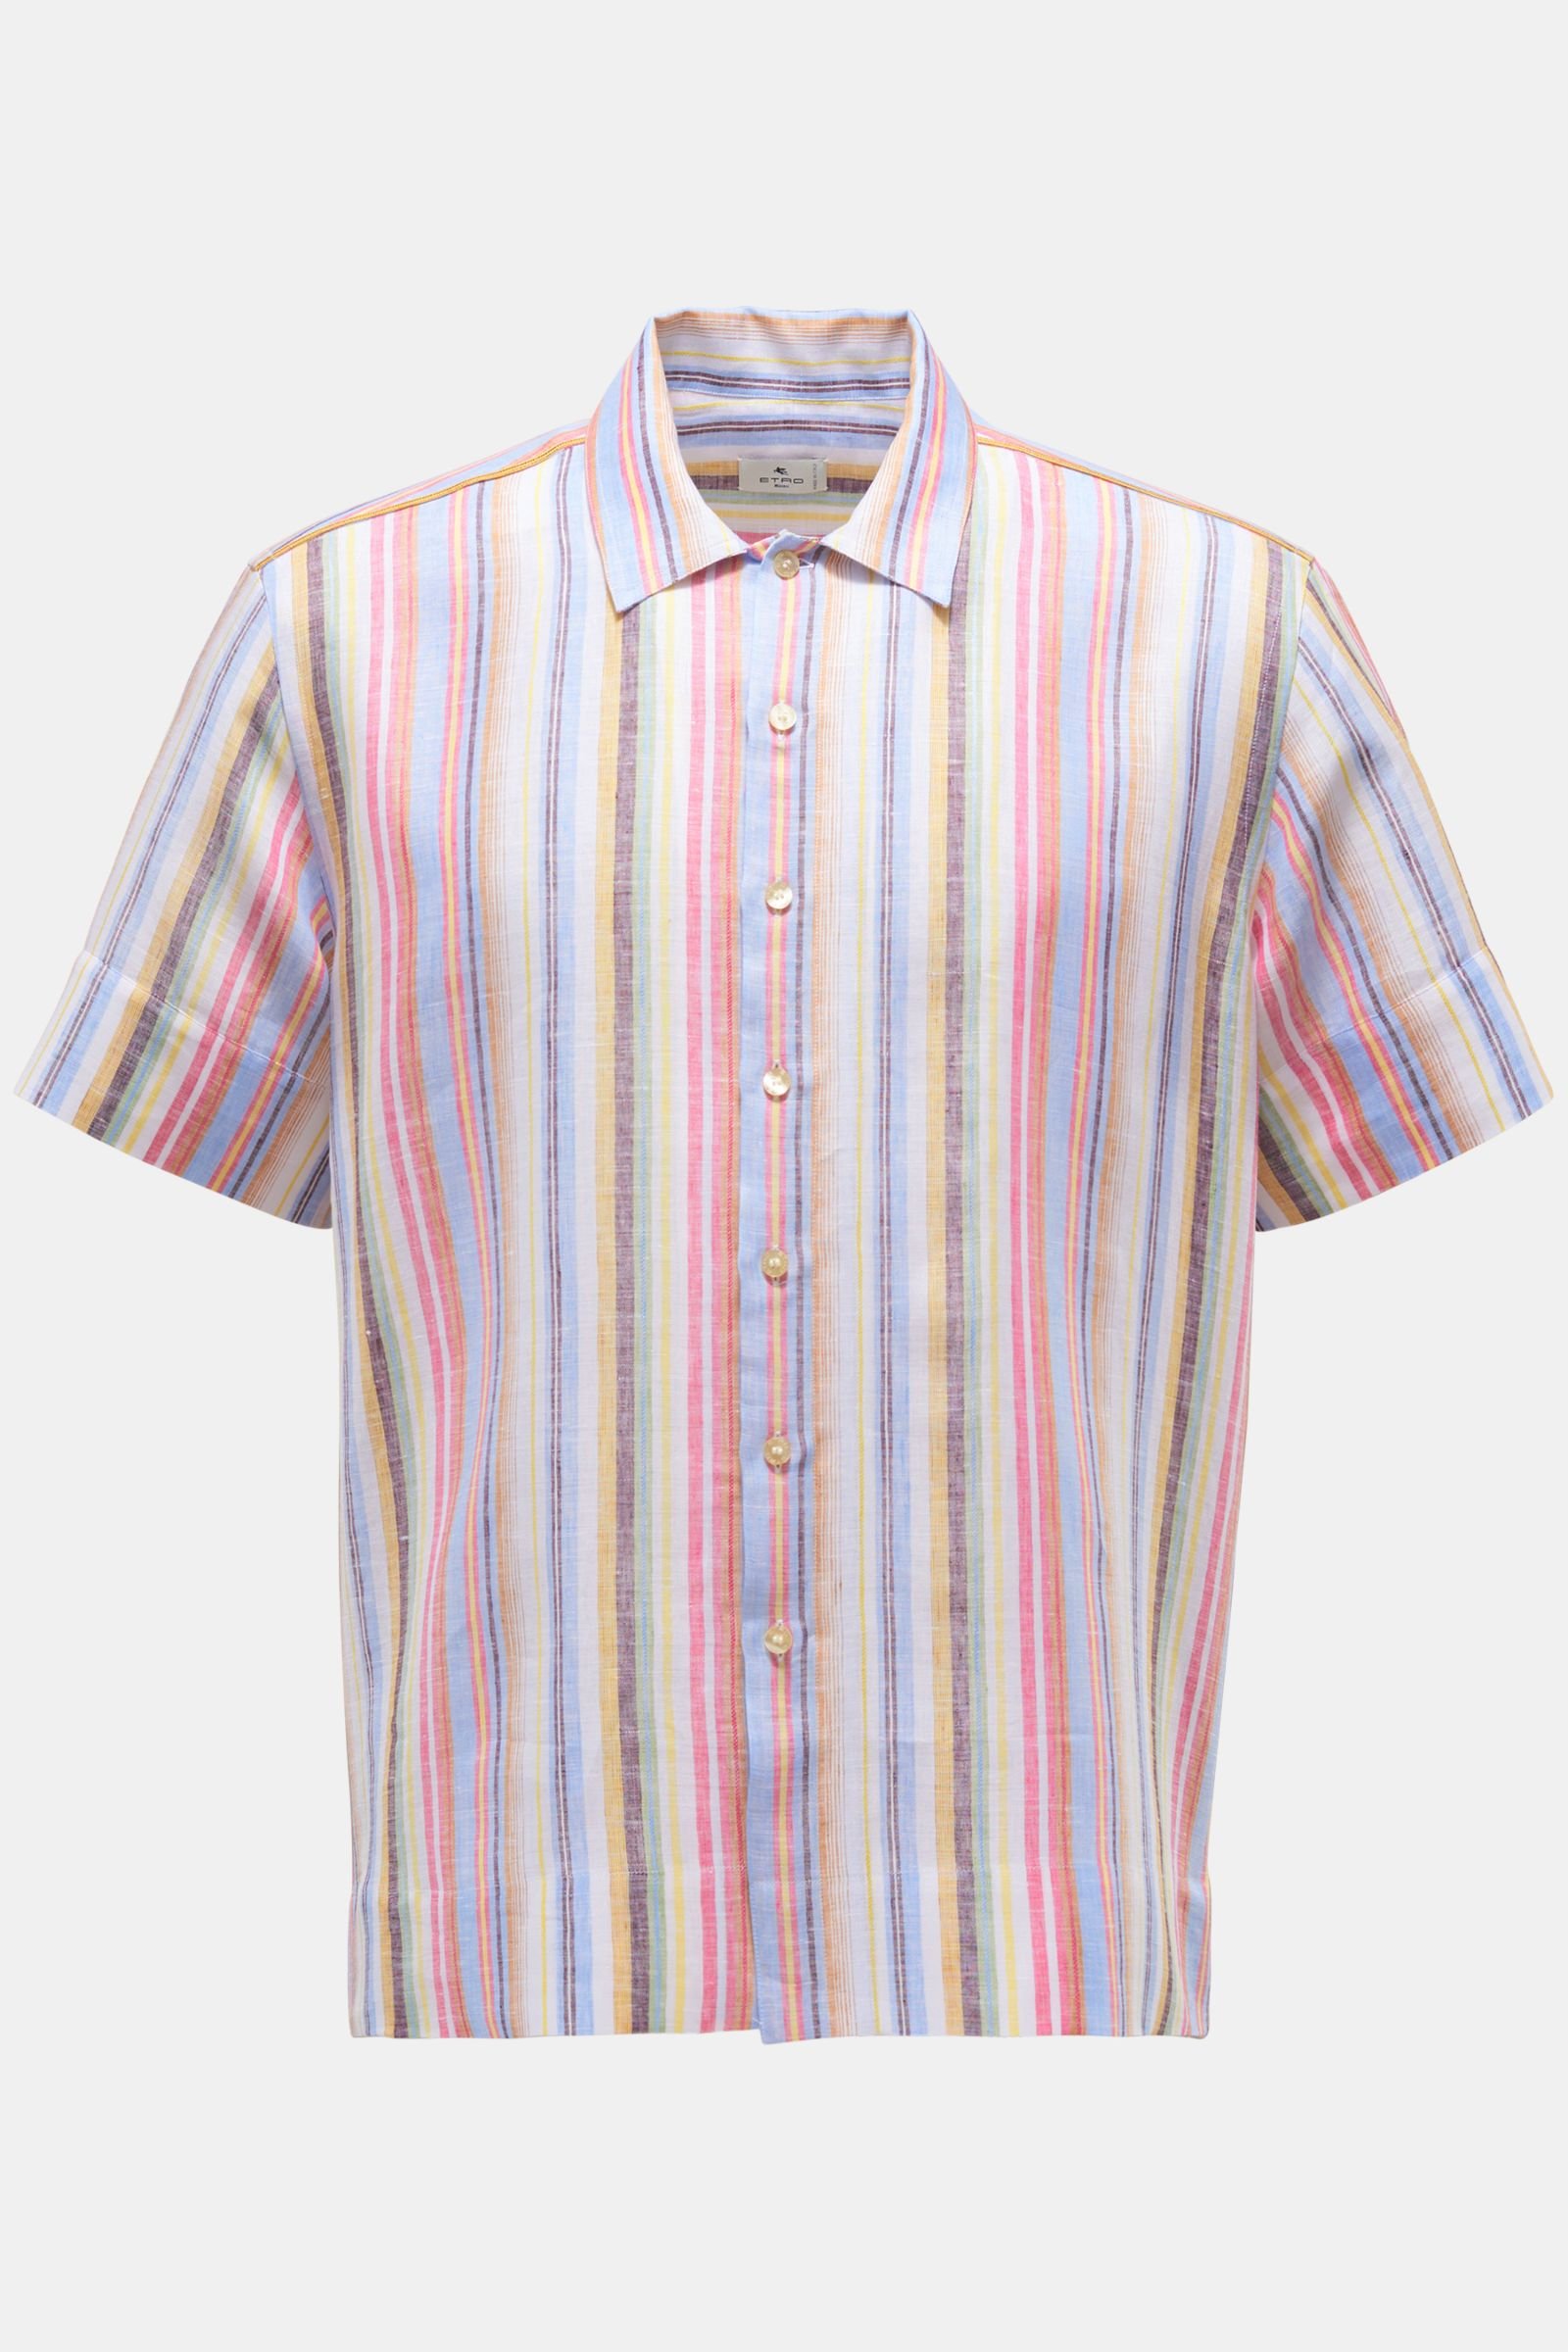 Linen short sleeve shirt narrow collar light blue/light red/yellow striped